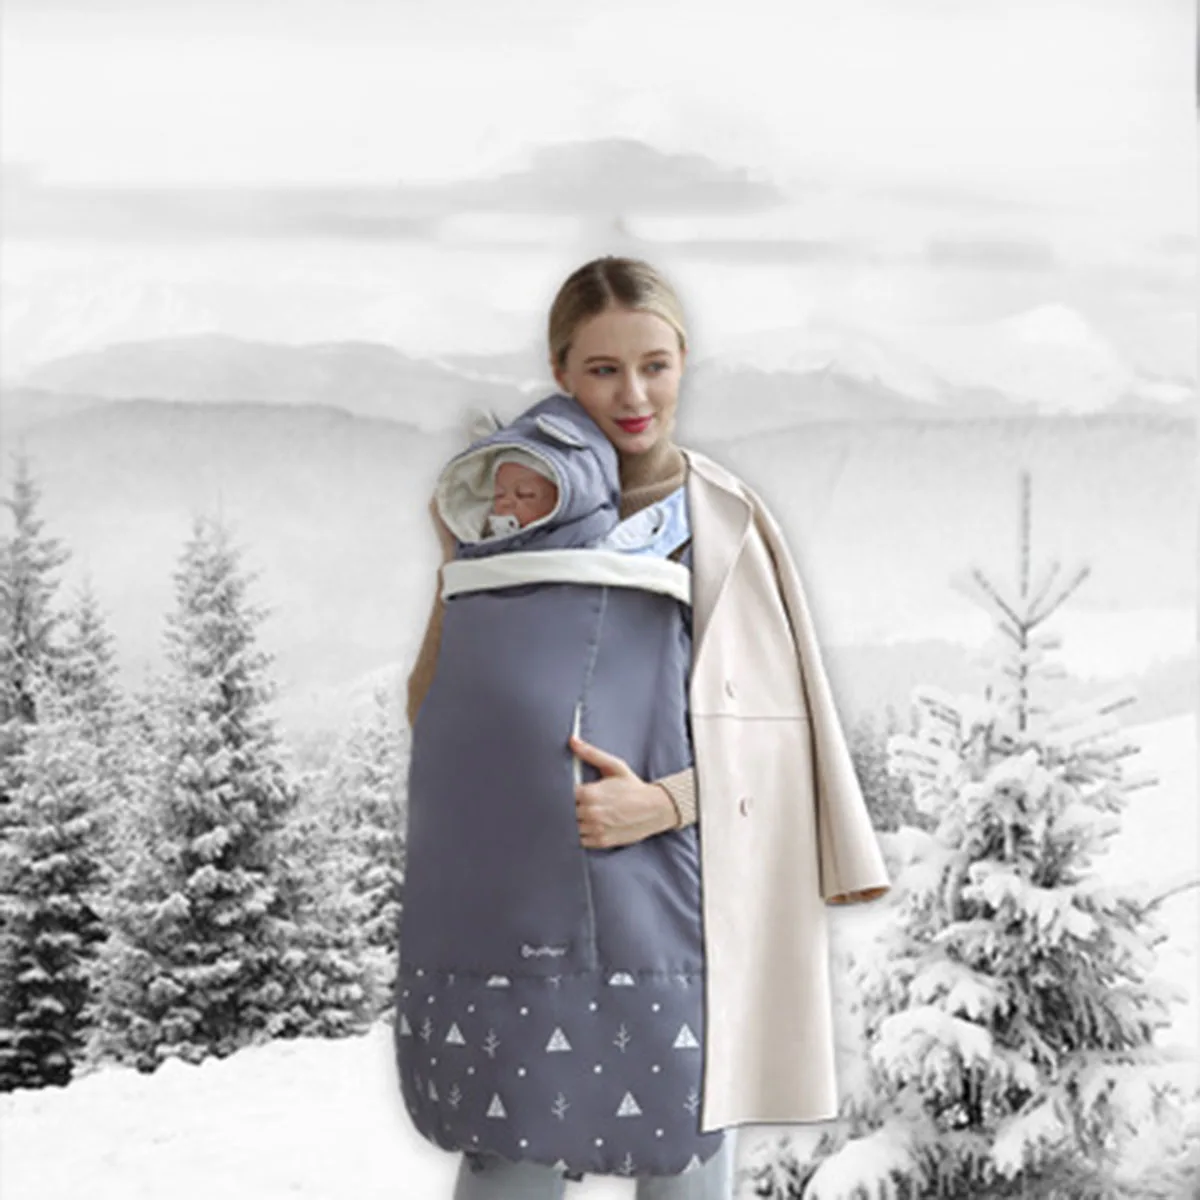 Переноска для младенца плащ на ремнях теплая накидка плащ Зимний чехол необходимый для переноски ребенка слинг